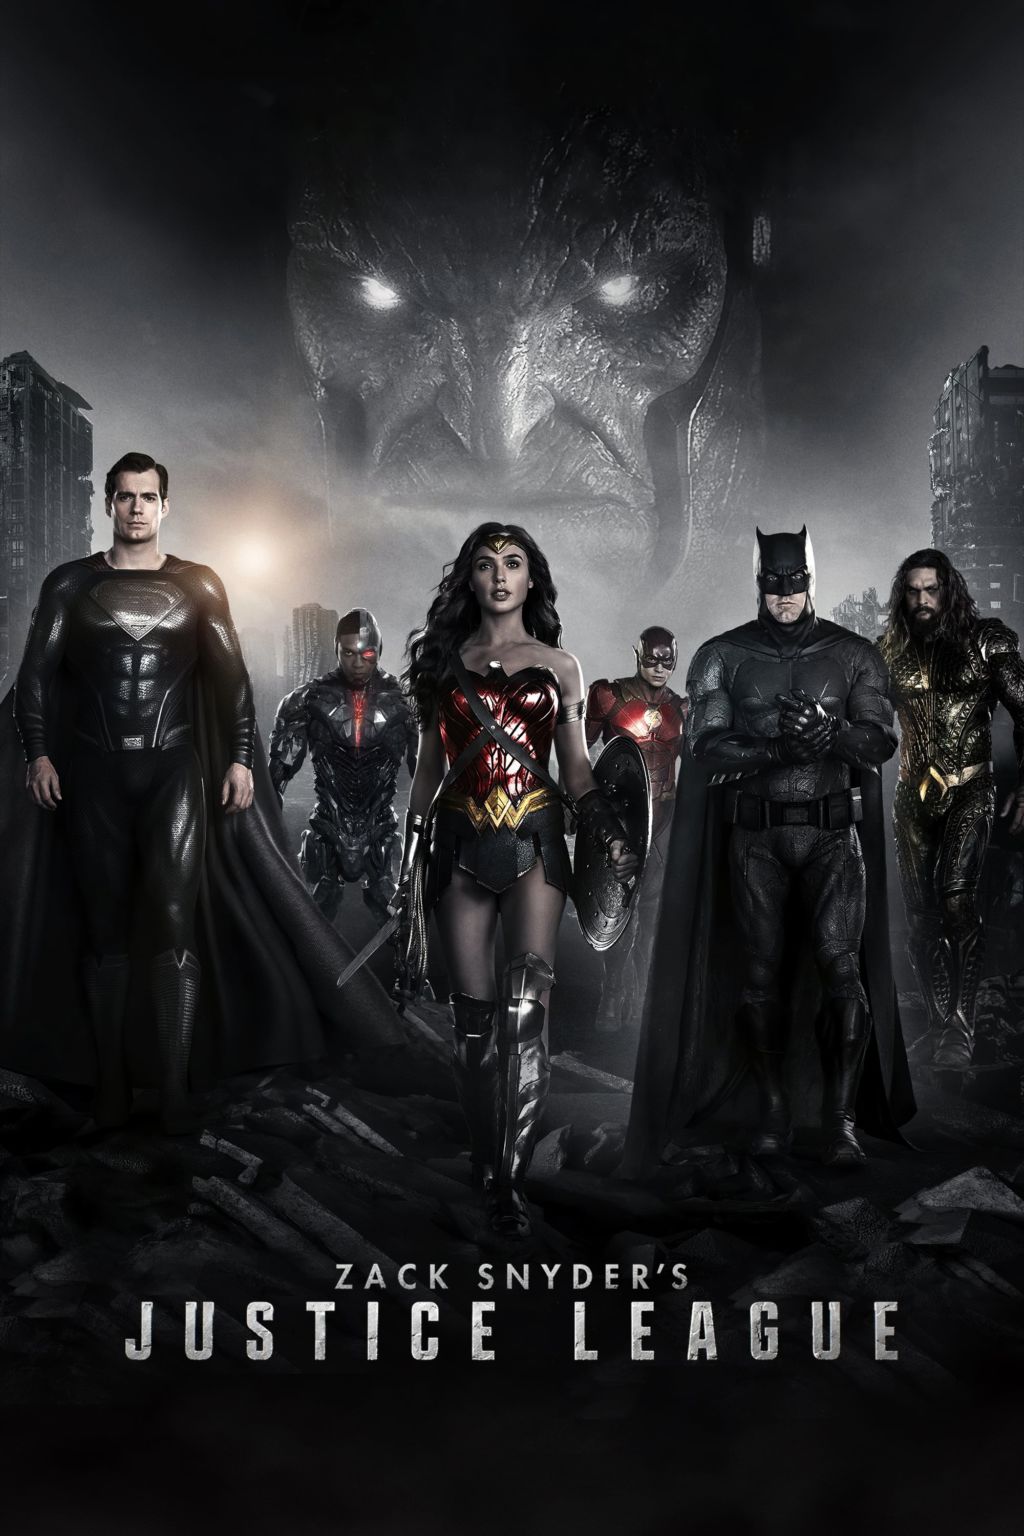 ডাউনলোড করে নিন এই বছরের সবচেয়ে হাইপ তোলা মুভি Zack Snyder’s Justice League | সাথে স্পয়লার বিহীন রিভিউ। ???